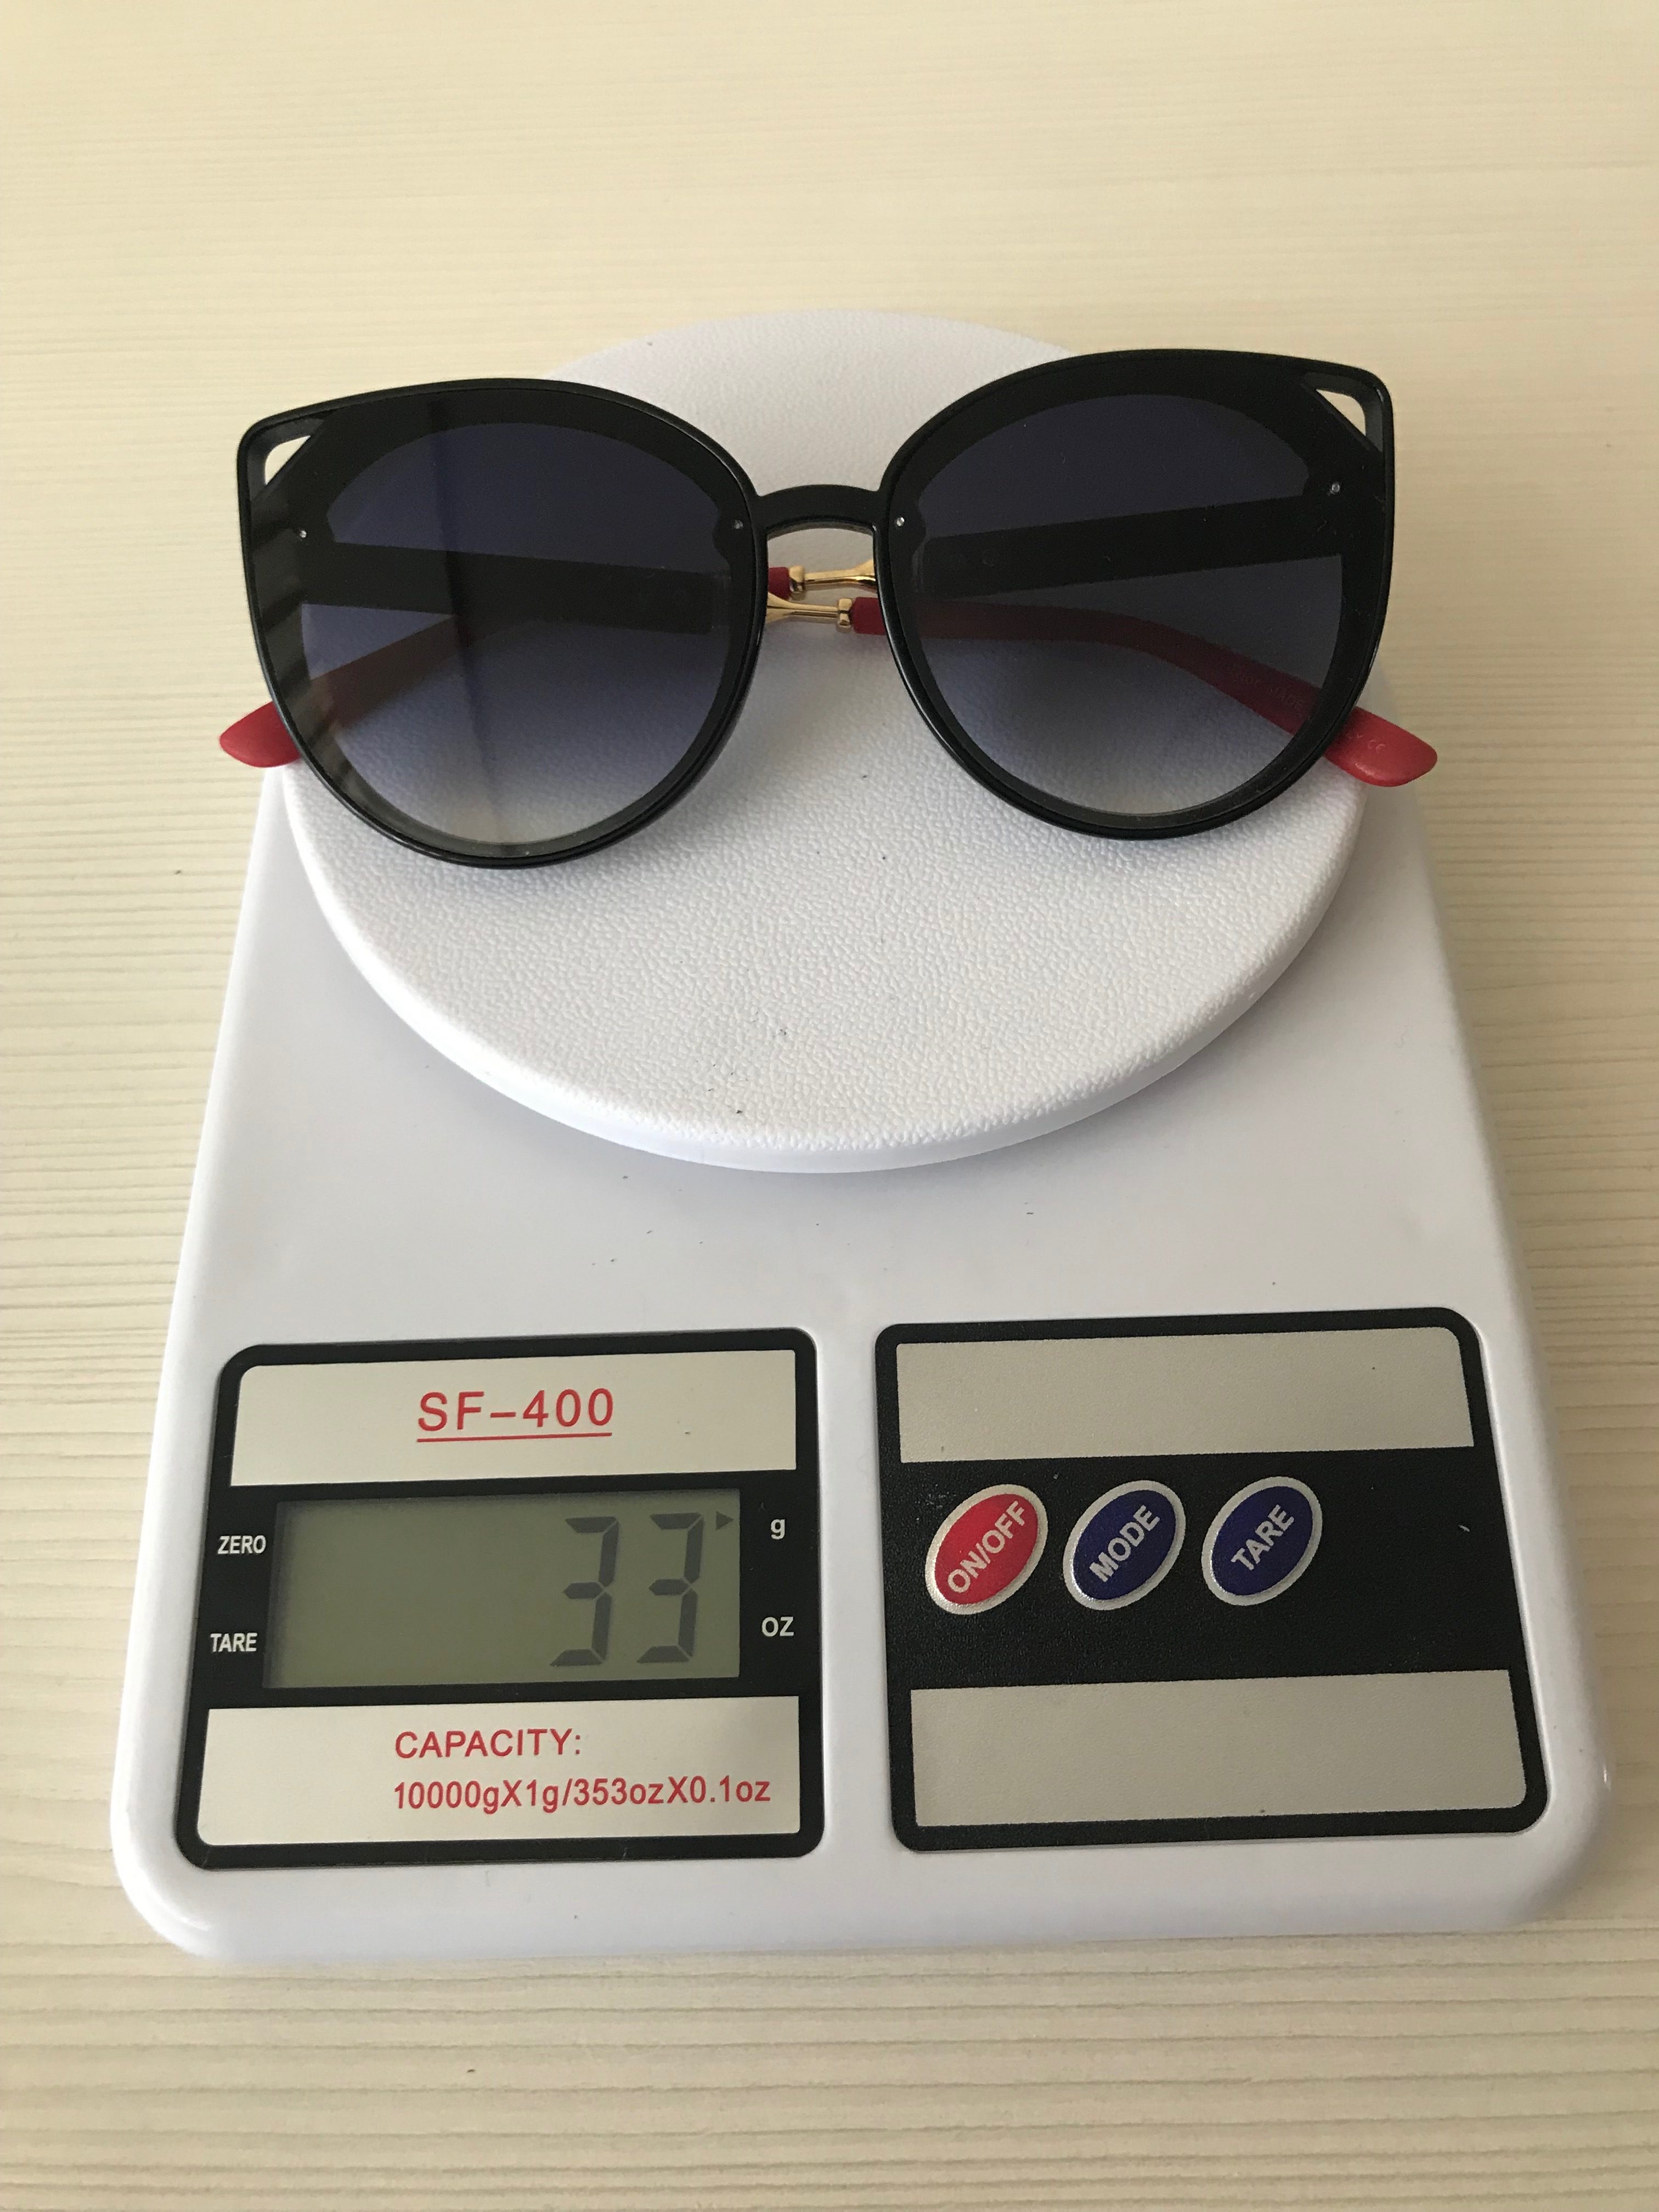 Güneş gözlüğü ağırlığı ne kadardır?